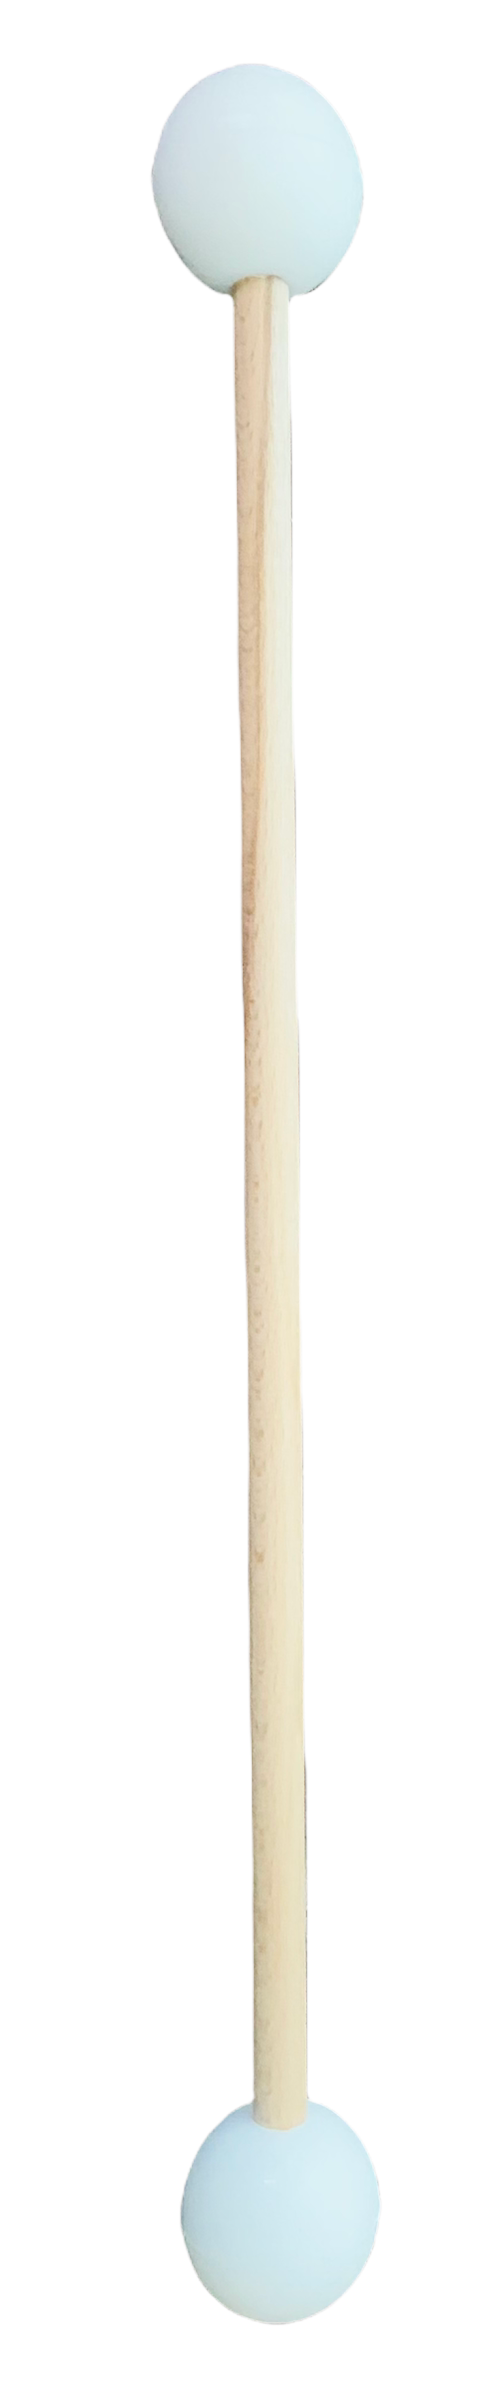 Drewniana pałeczka 47 cm